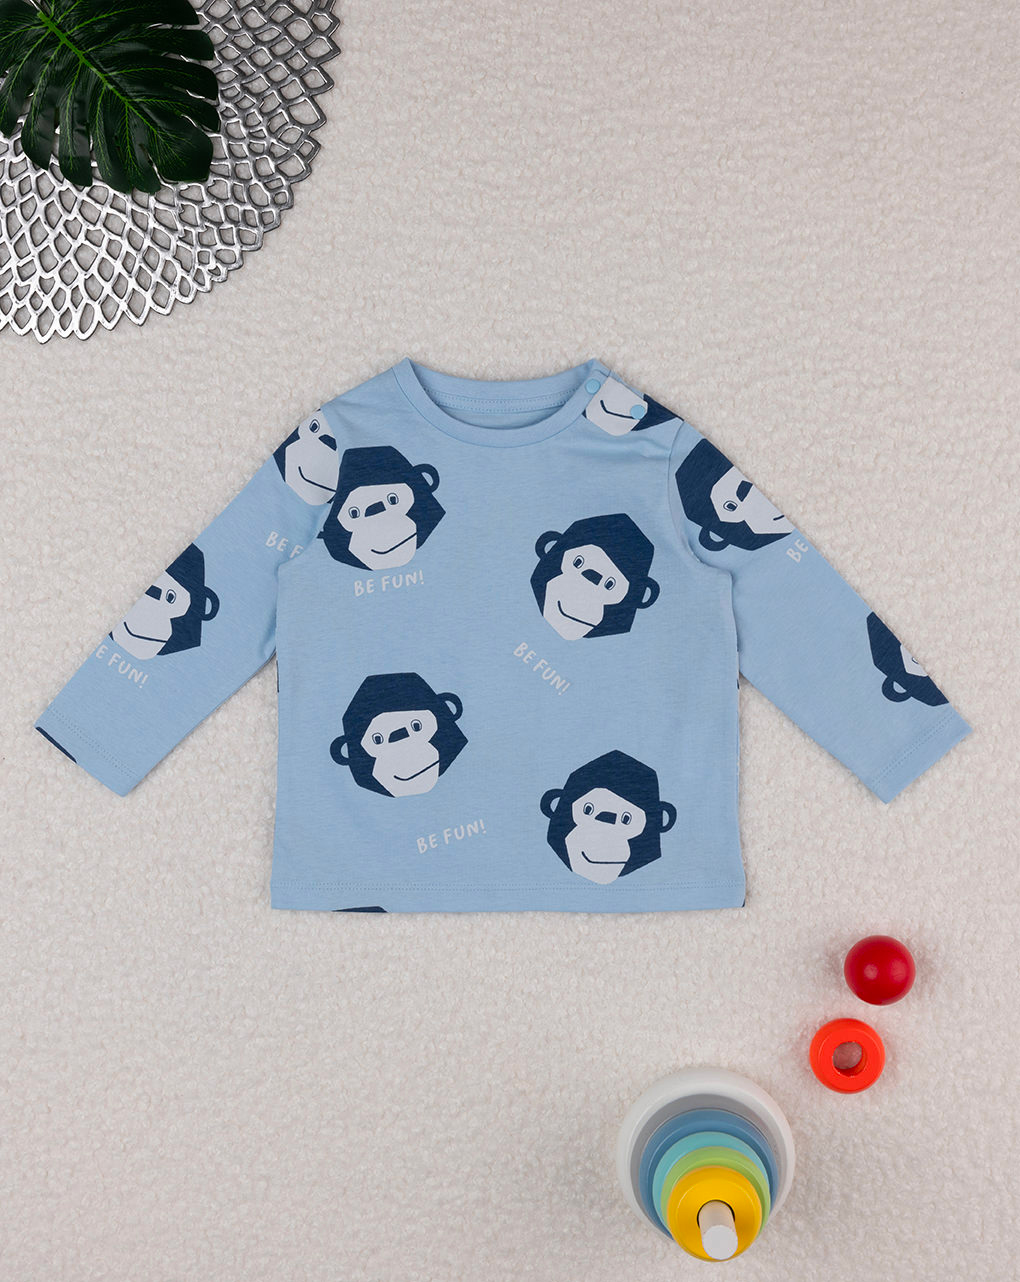 βρεφική μπλούζα γαλάζια με μαϊμουδάκια για αγόρι - Prénatal